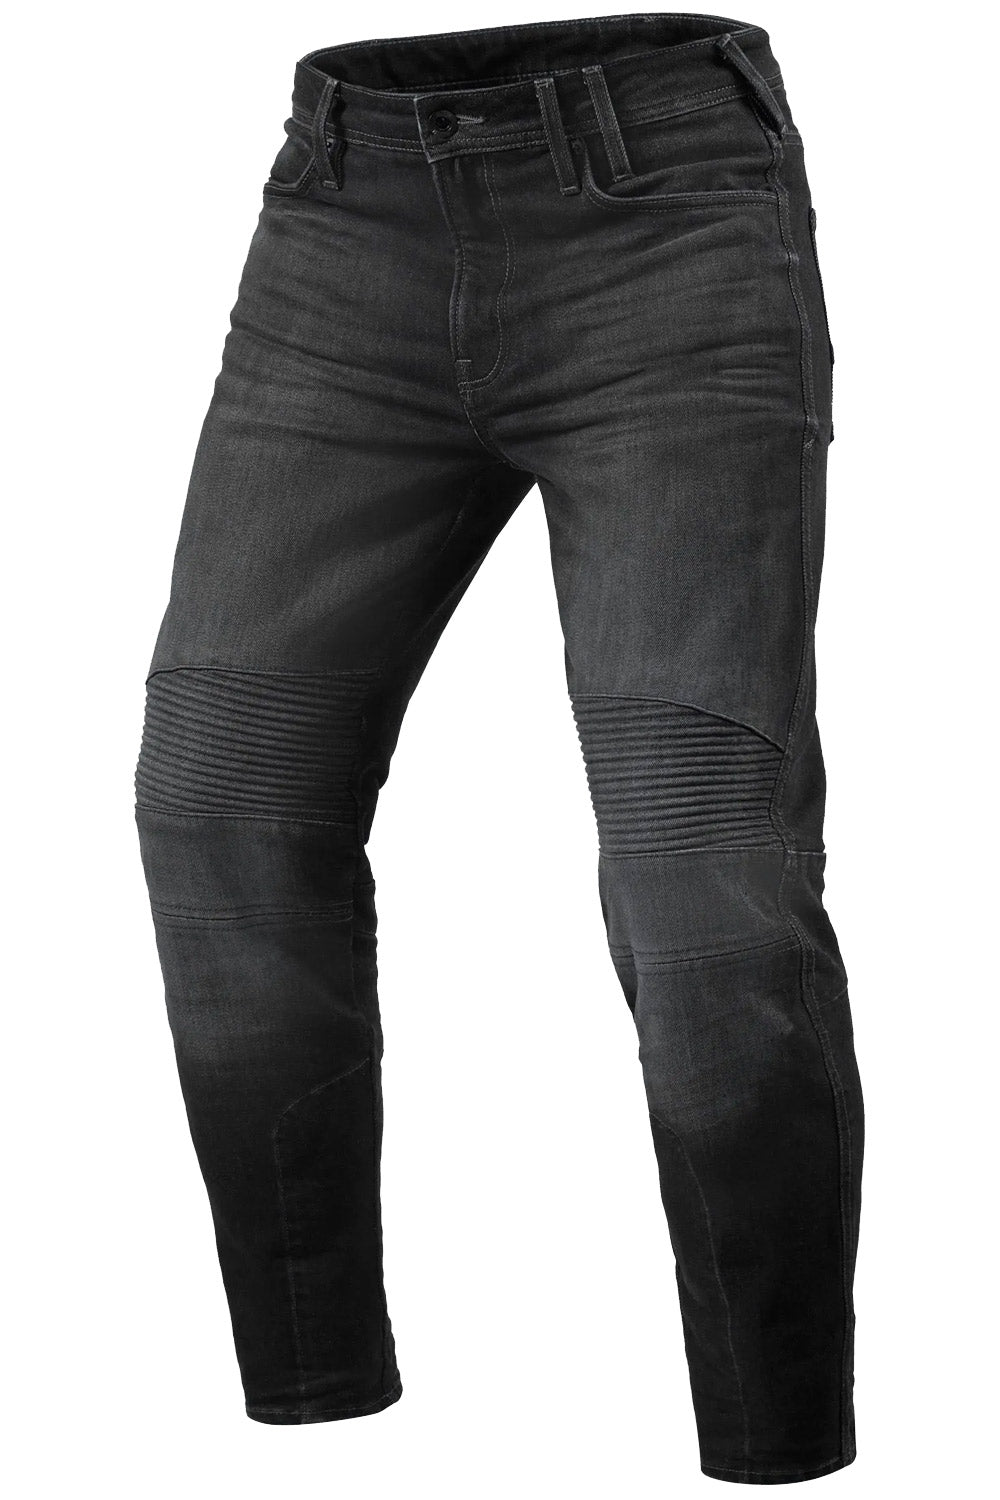 COUNTRY DENIM AUSTRALIA Black Wax Jeans Women's Size 10 Skinny Stretch  Mid-Rise | eBay